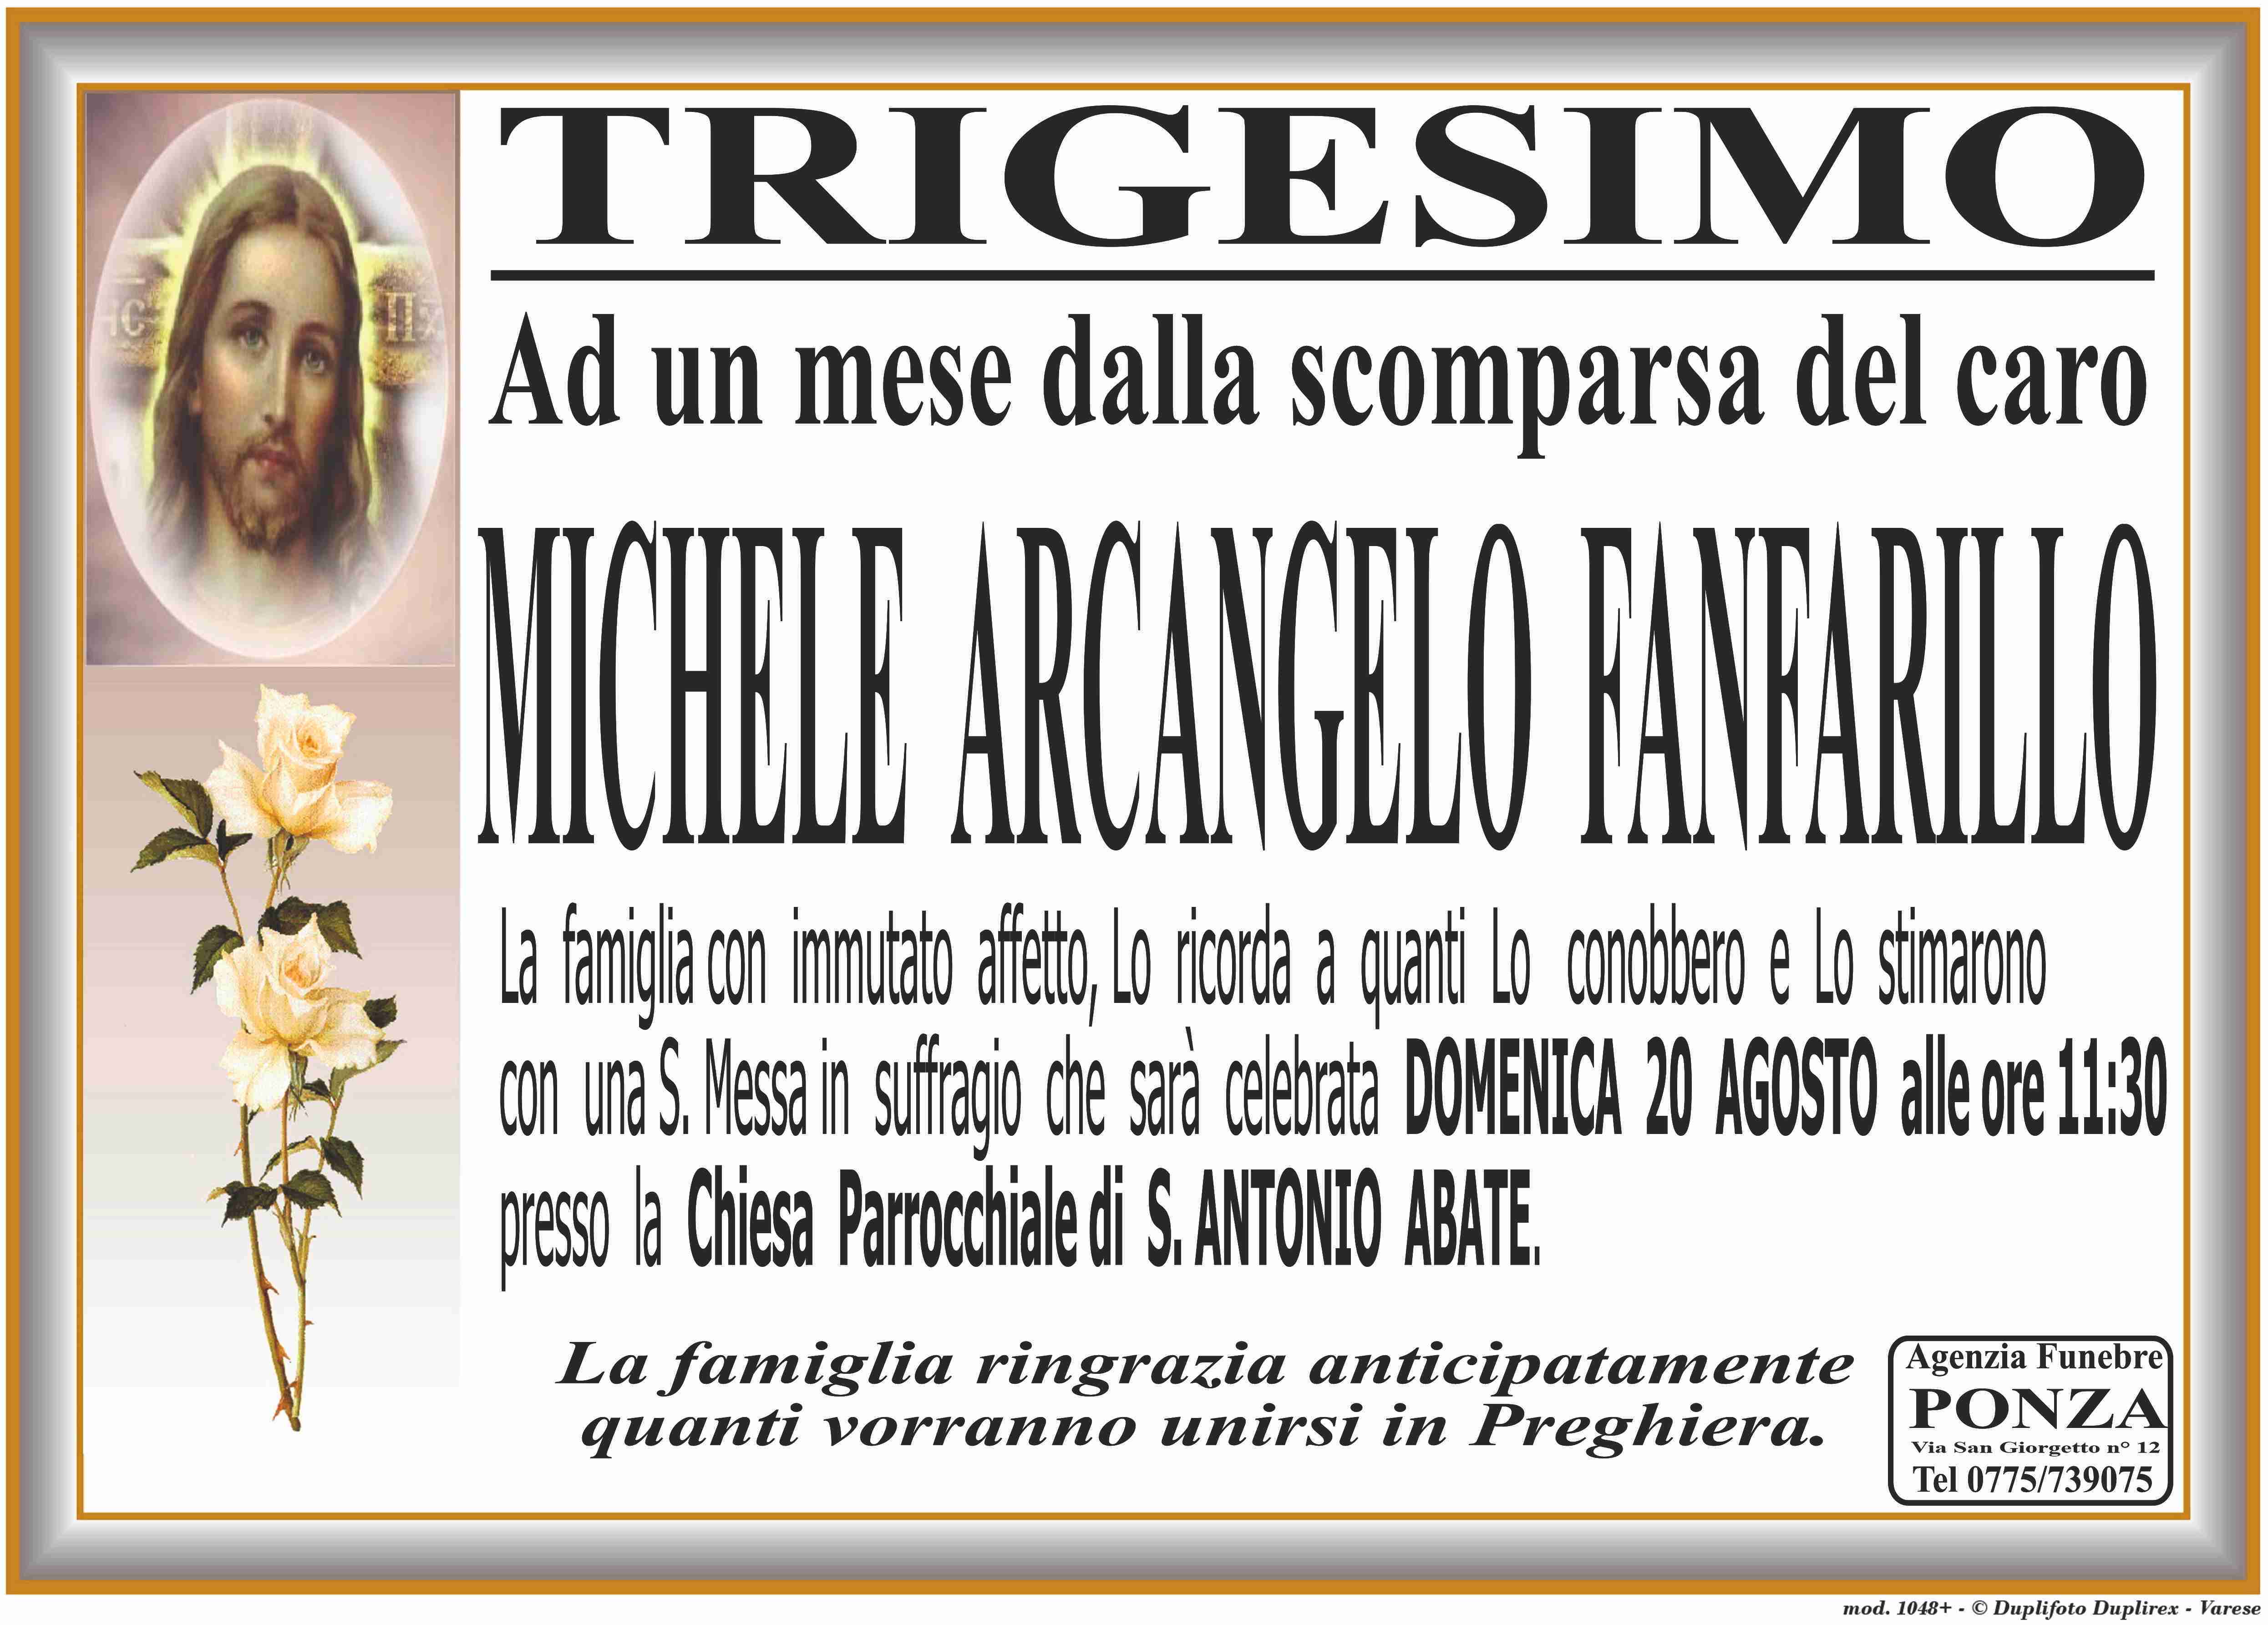 Michele Arcangelo Fanfarillo